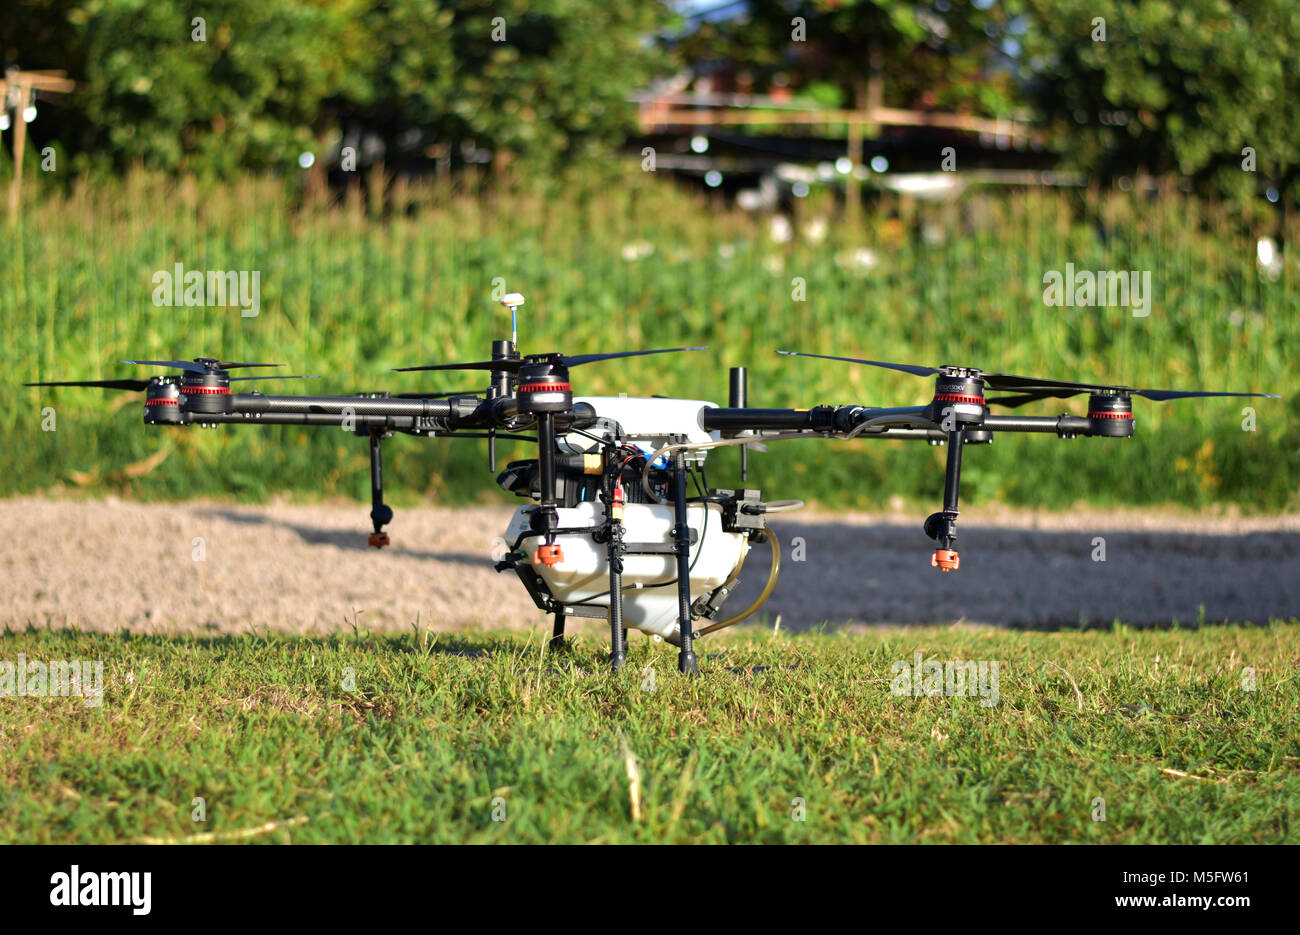 La agricultura drone, imagen fotográfica de la agricultura drone llevar un  tanque de fertilizante líquido sobre la hierba verde de estacionamiento  suelo preparar para pulverizar en agricultura son Fotografía de stock -